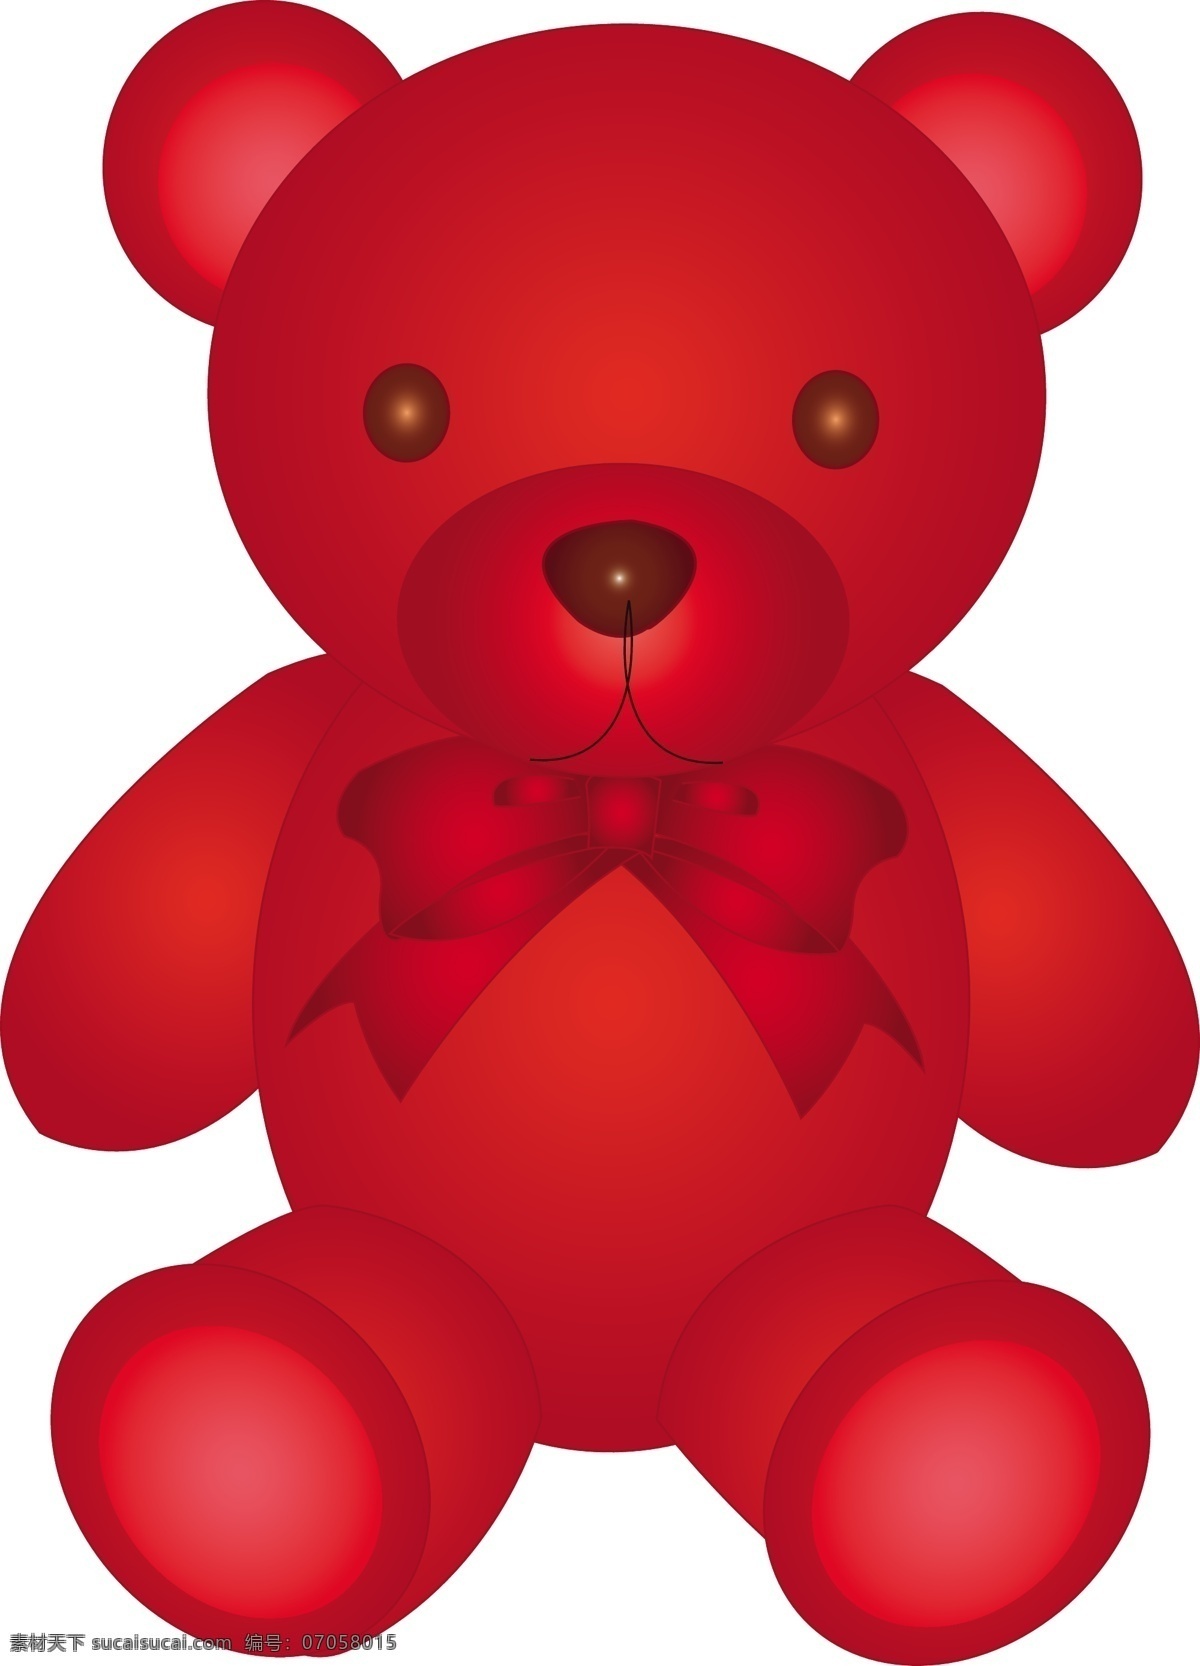 可爱 的卡 通 玩具 熊 插画 公仔 卡通 模板 设计稿 素材元素 毛绒熊 玩具熊 源文件 矢量图